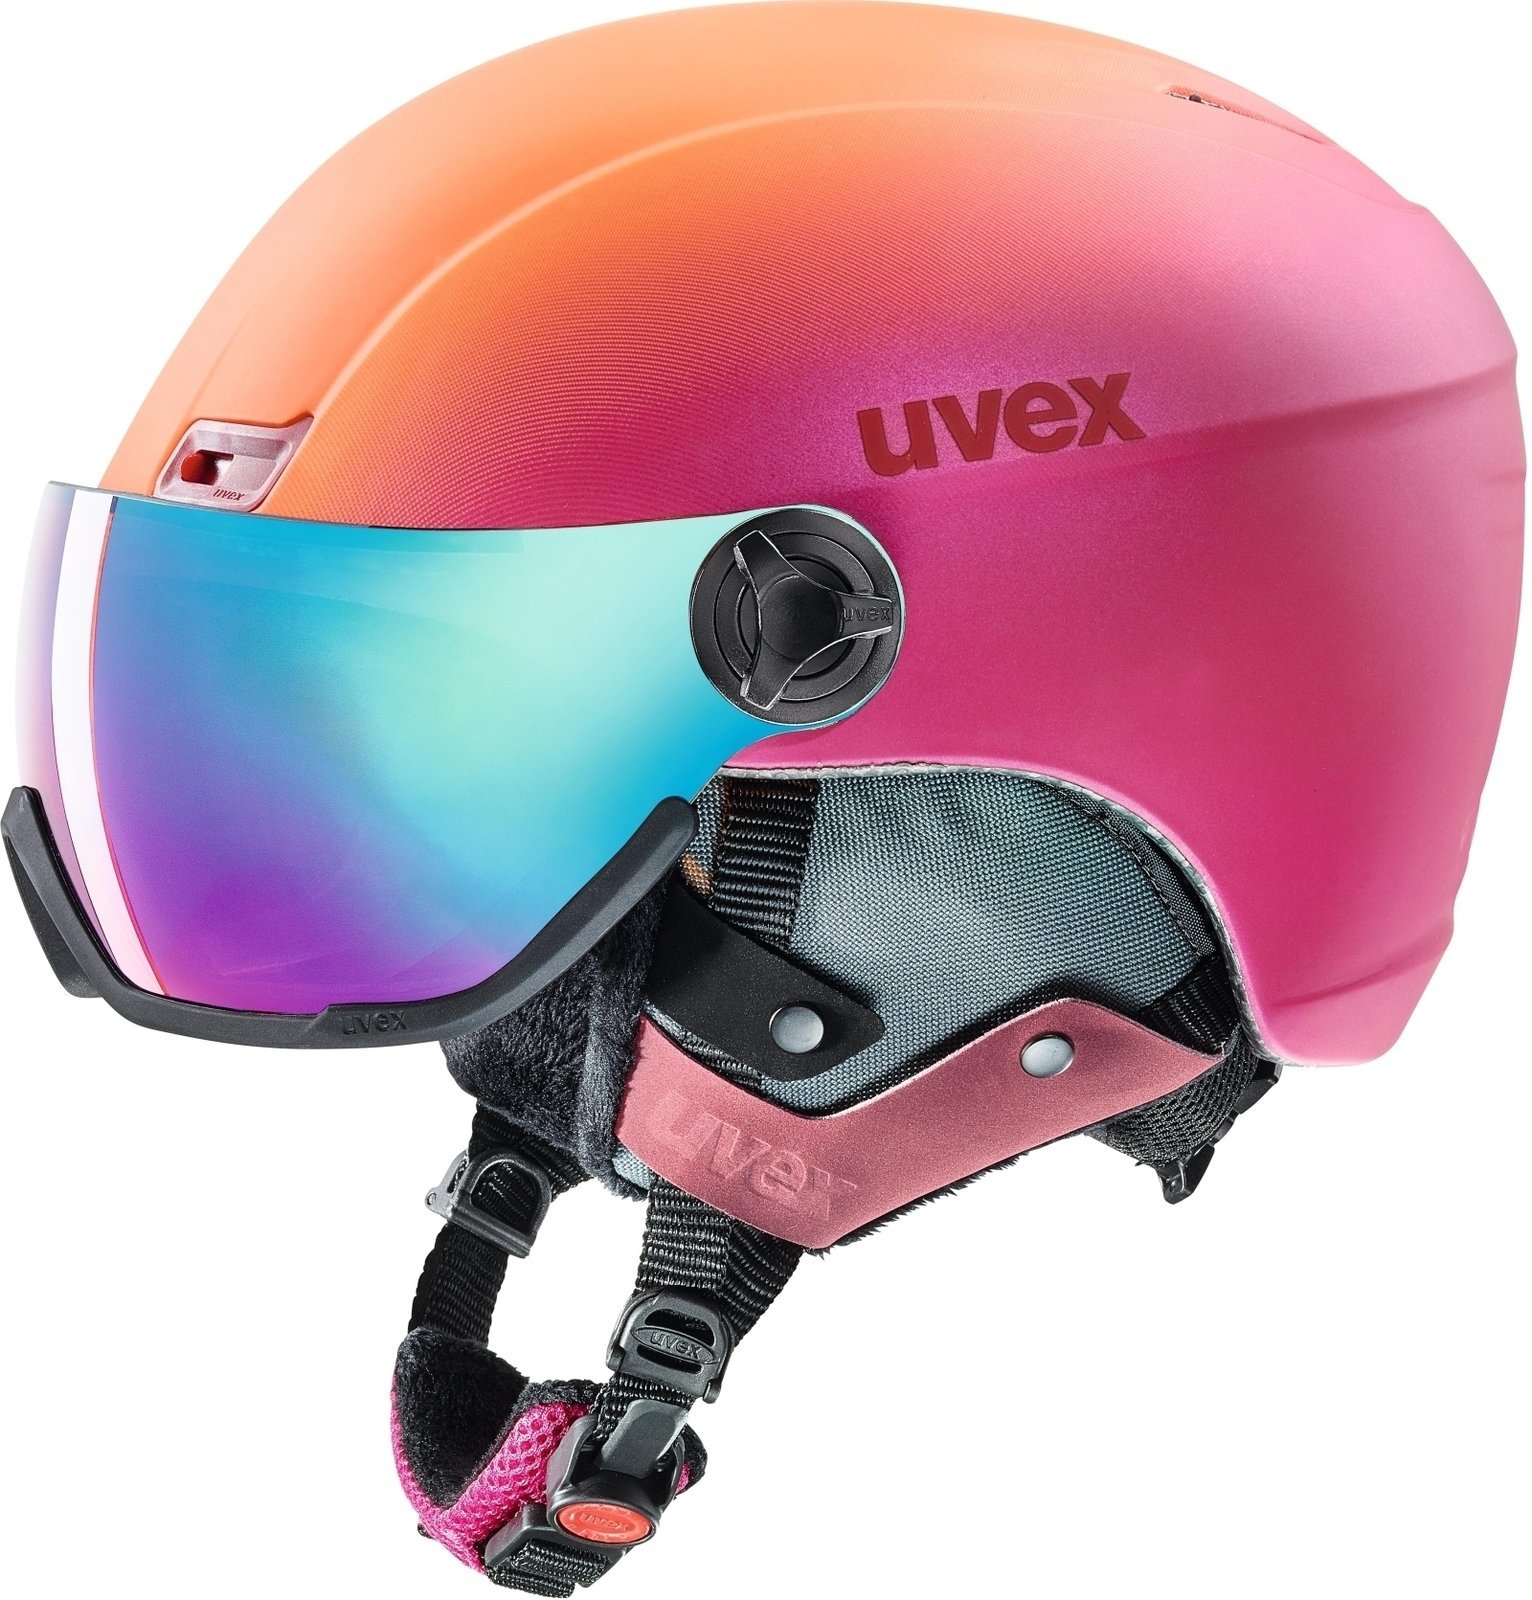 Sísisak UVEX Hlmt 400 Visor Style Pink-Orange Met Mat 53-58 cm 18/19